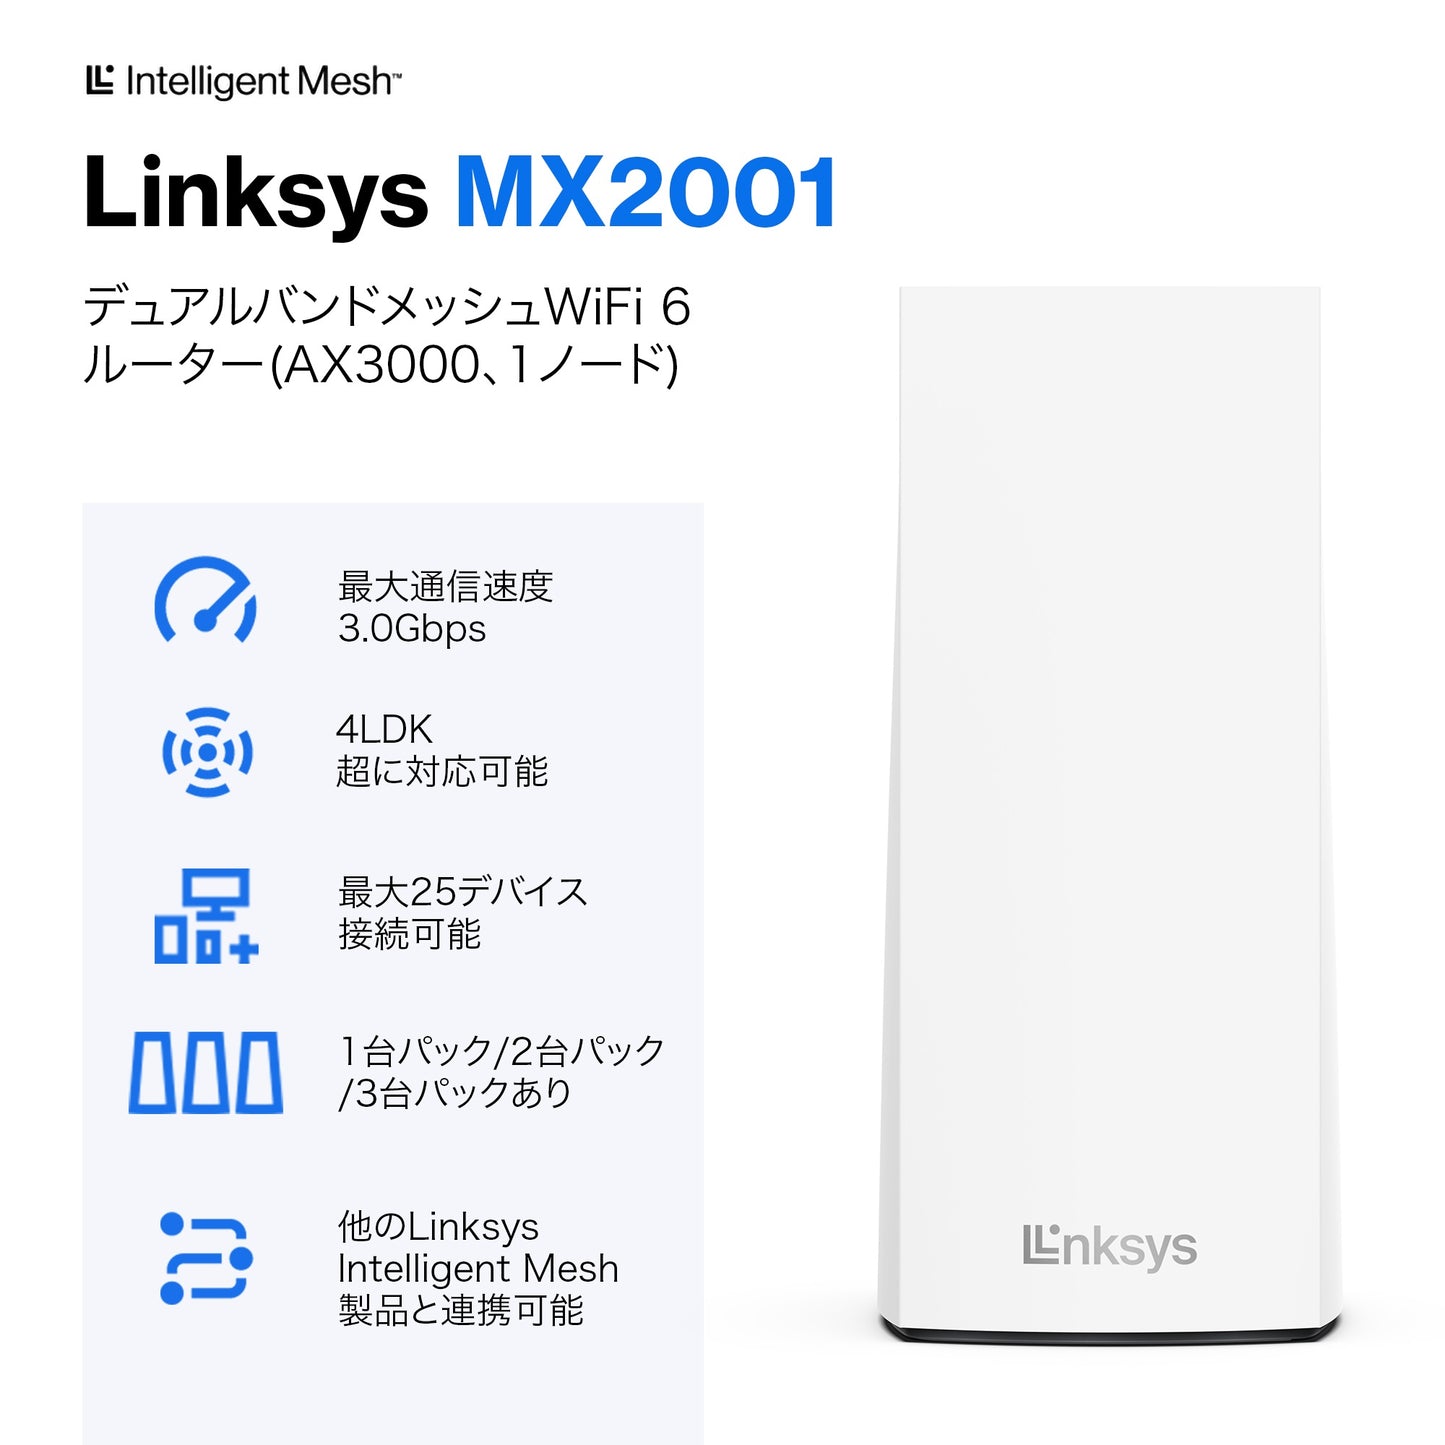 MX2001-JP デュアルバンド WiFi 6 ax3000 メッシュシステム 1 pack